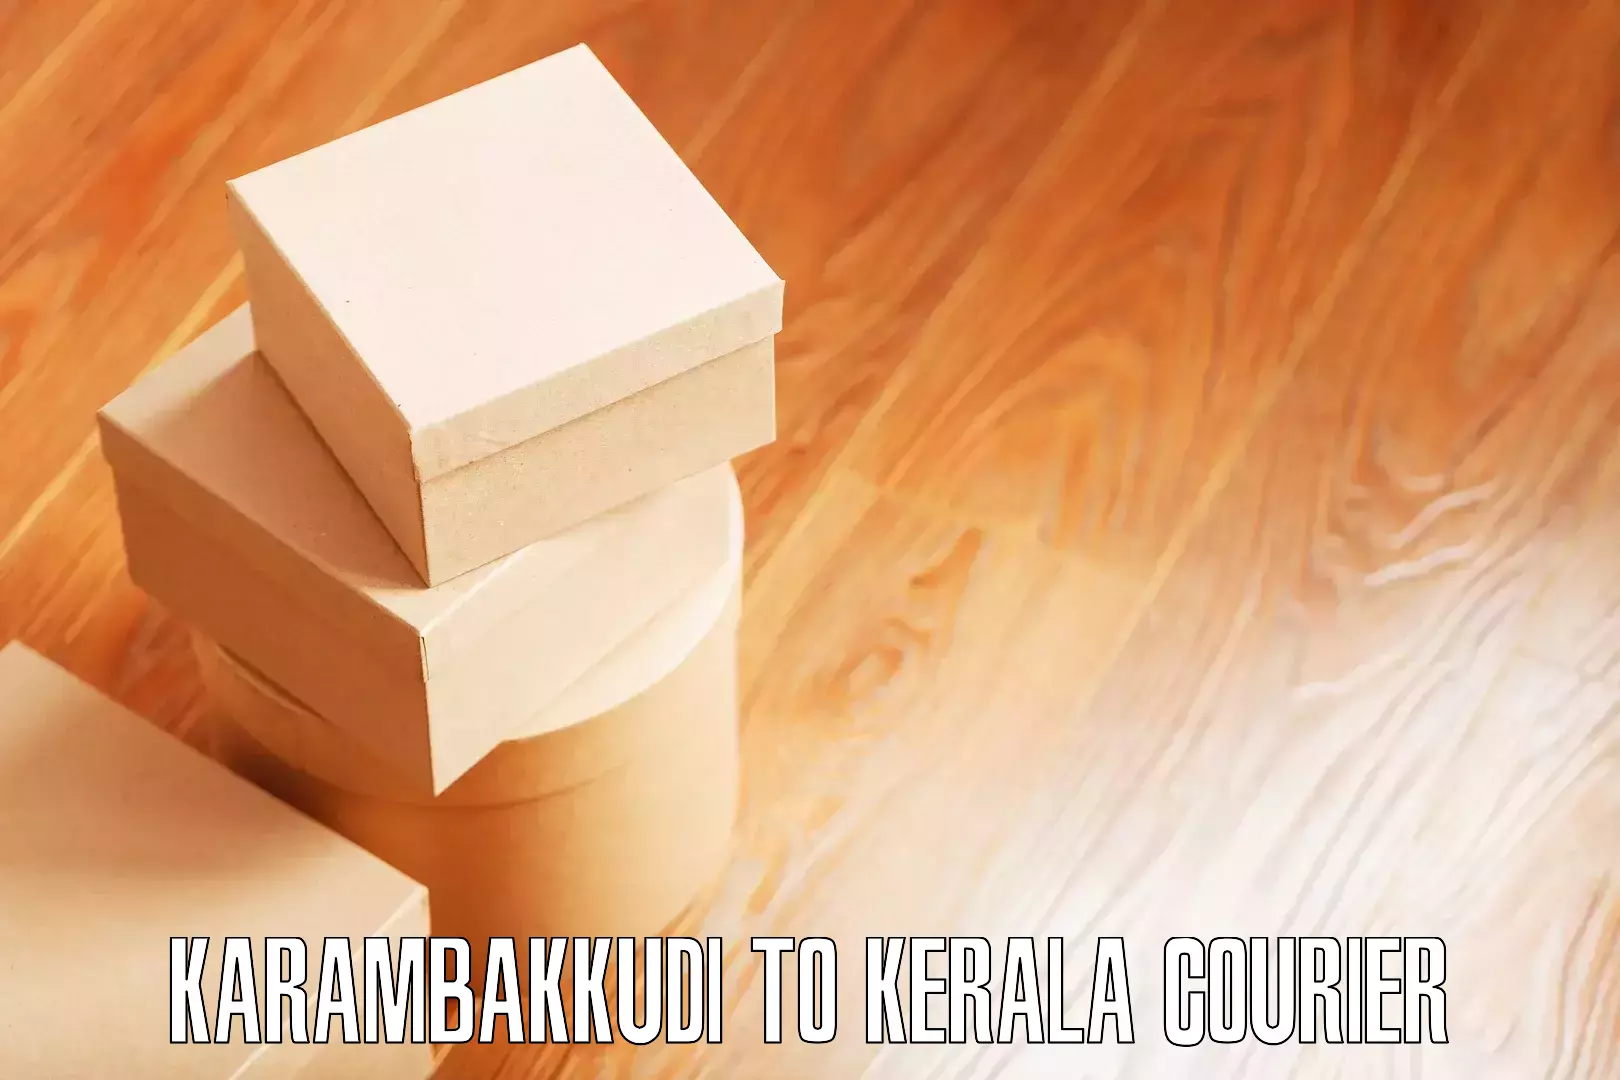 Household moving service Karambakkudi to Thiruvananthapuram